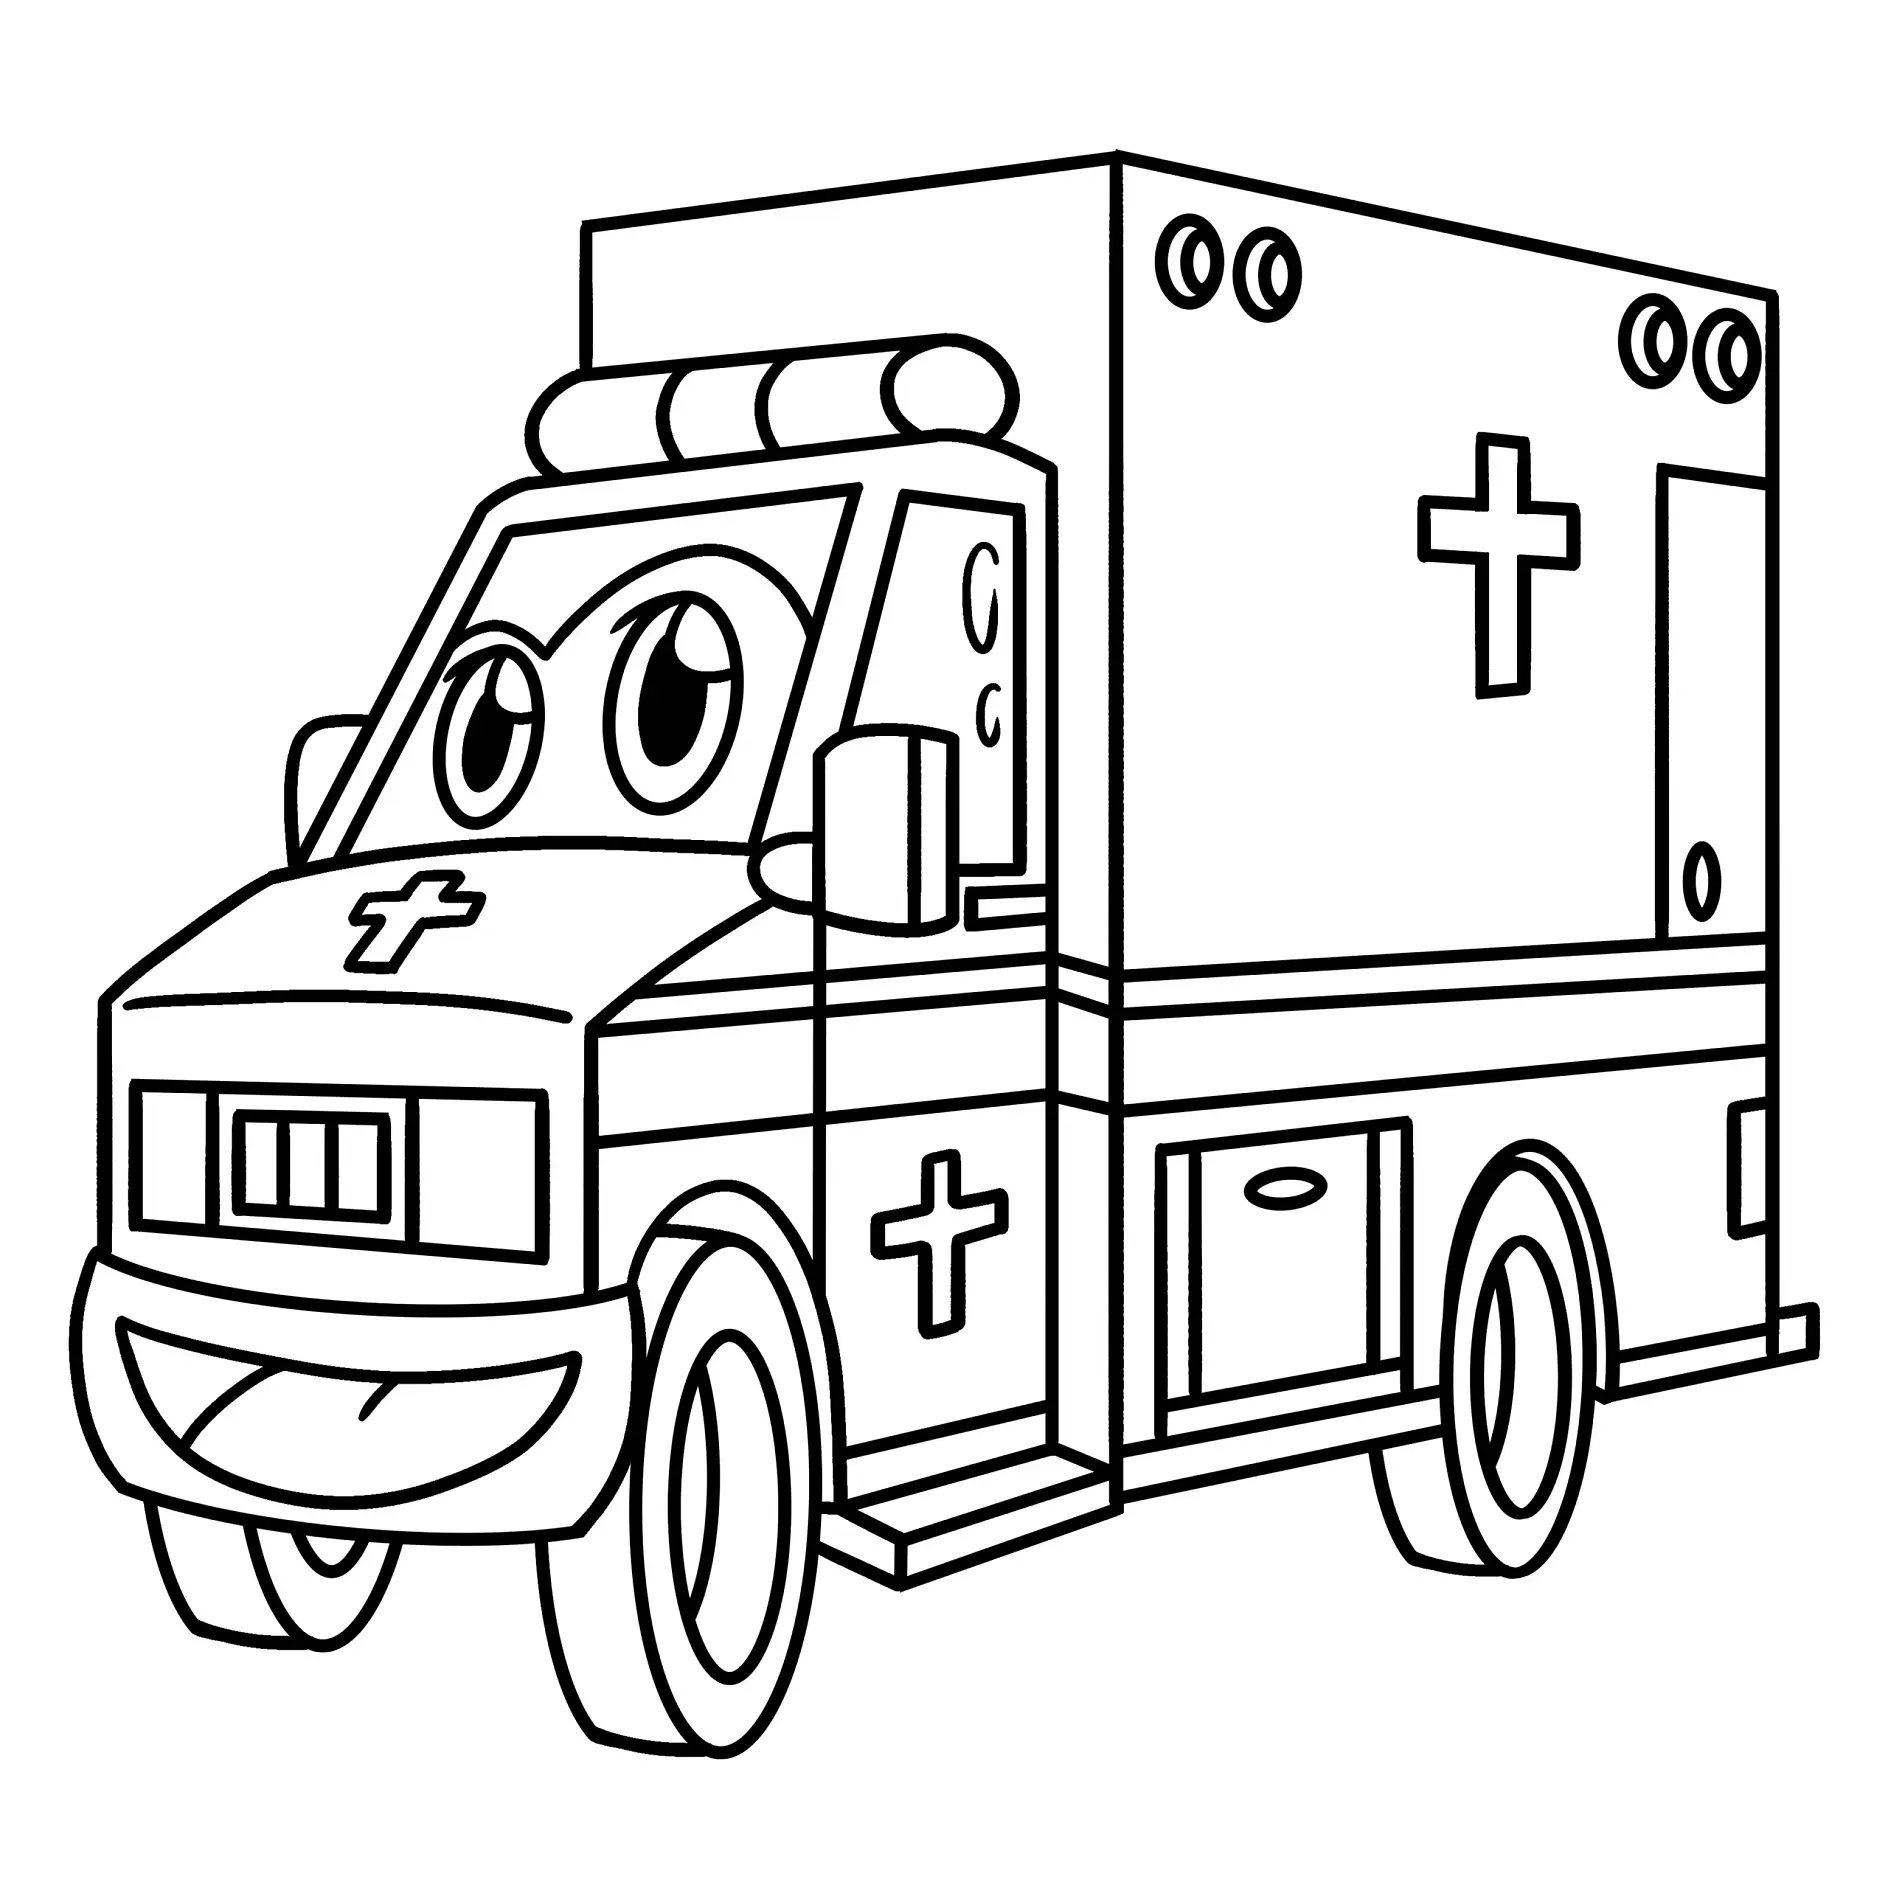 Ausmalbild Krankenwagen mit lächelndem Gesicht